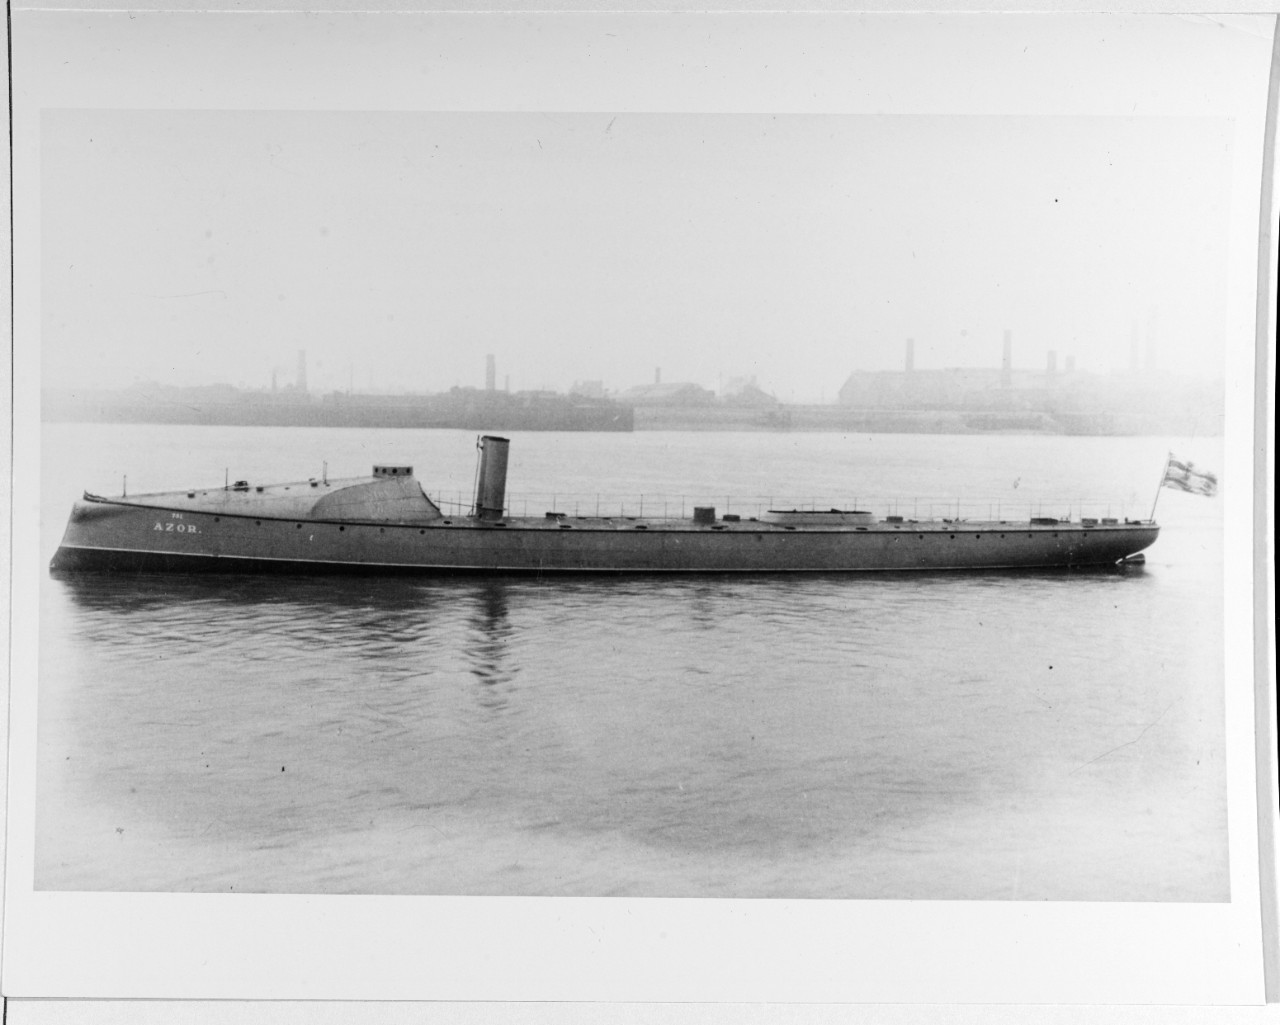 Spanish torpedo boat AZOR, built by Yarrow in 1887.